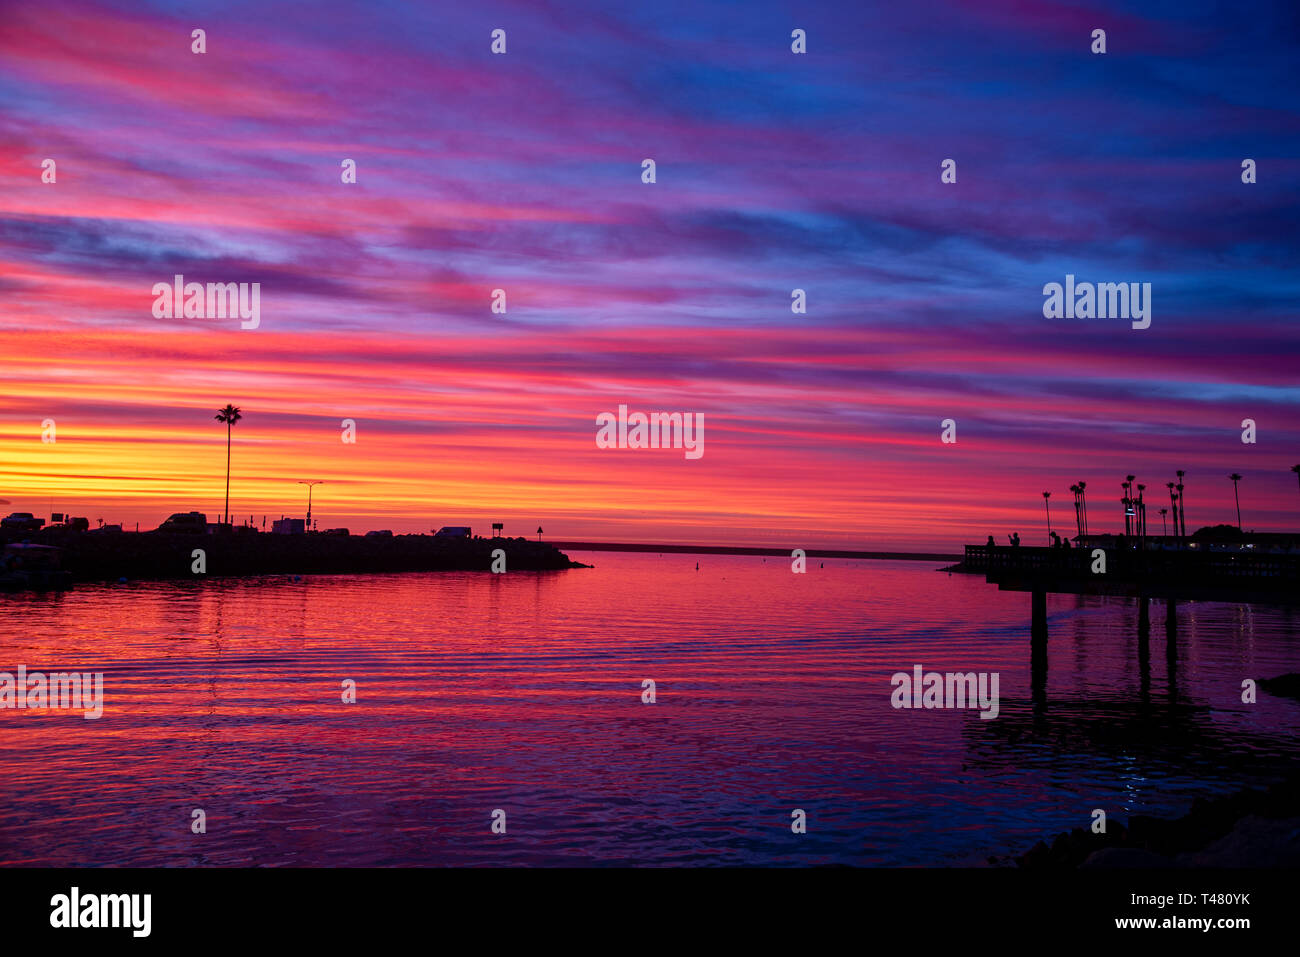 Hafeneinfahrt widersteht Silhouetten gegen einen Himmel von Blau, Violett, Rot, Orange und Gelb. Der Ozean ist reelecting die Farben des Himmels. Stockfoto